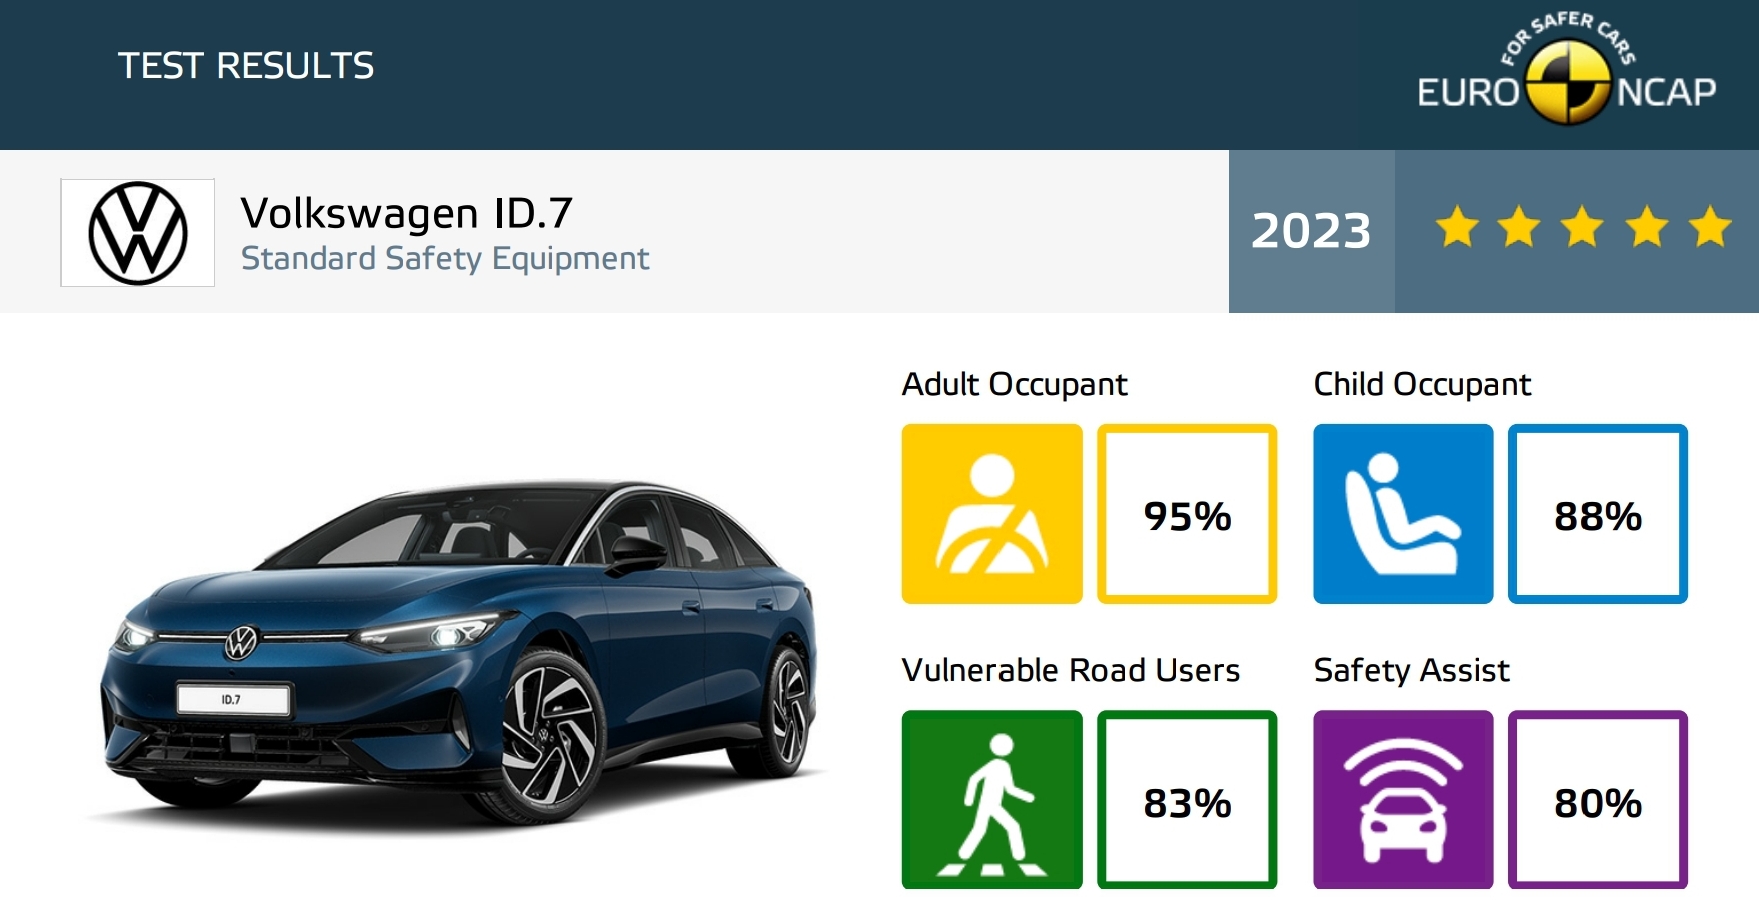 フォルクスワーゲン ID.7 がユーロ NCAP テストで最高の安全性評価を獲得